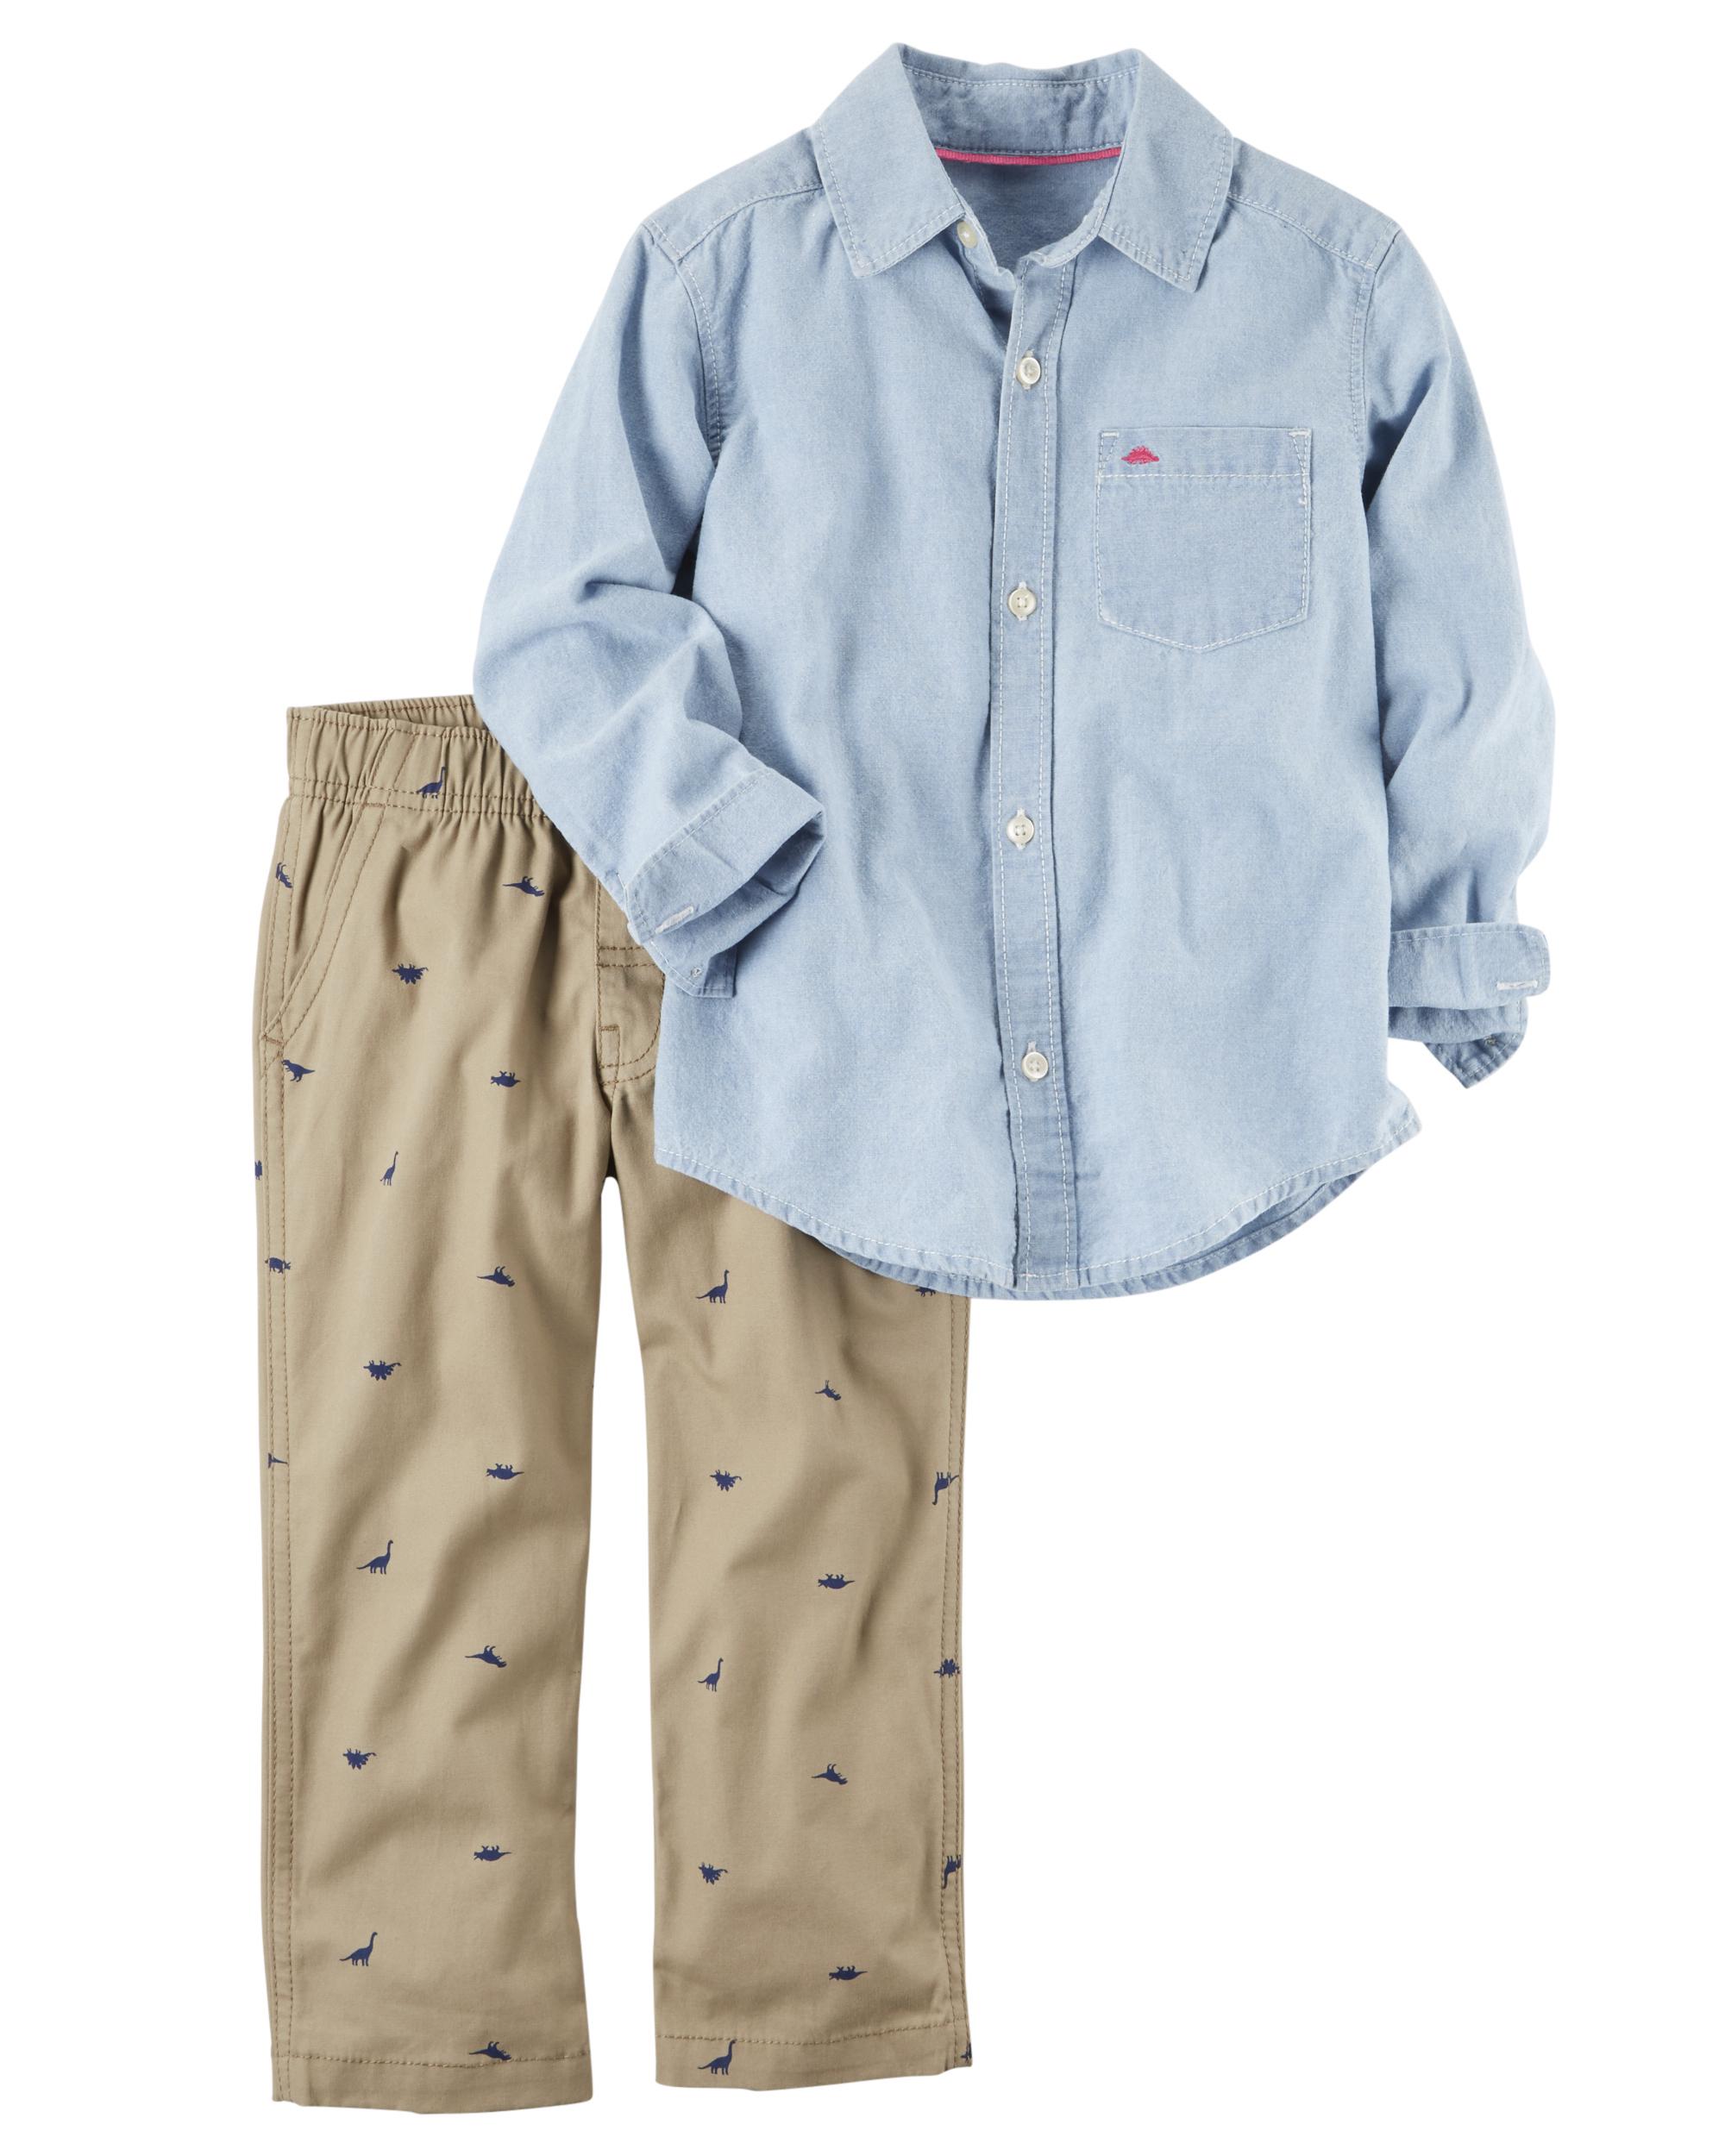 Carter's Toddler Boys' Shirt & Pants - Dinosaurs